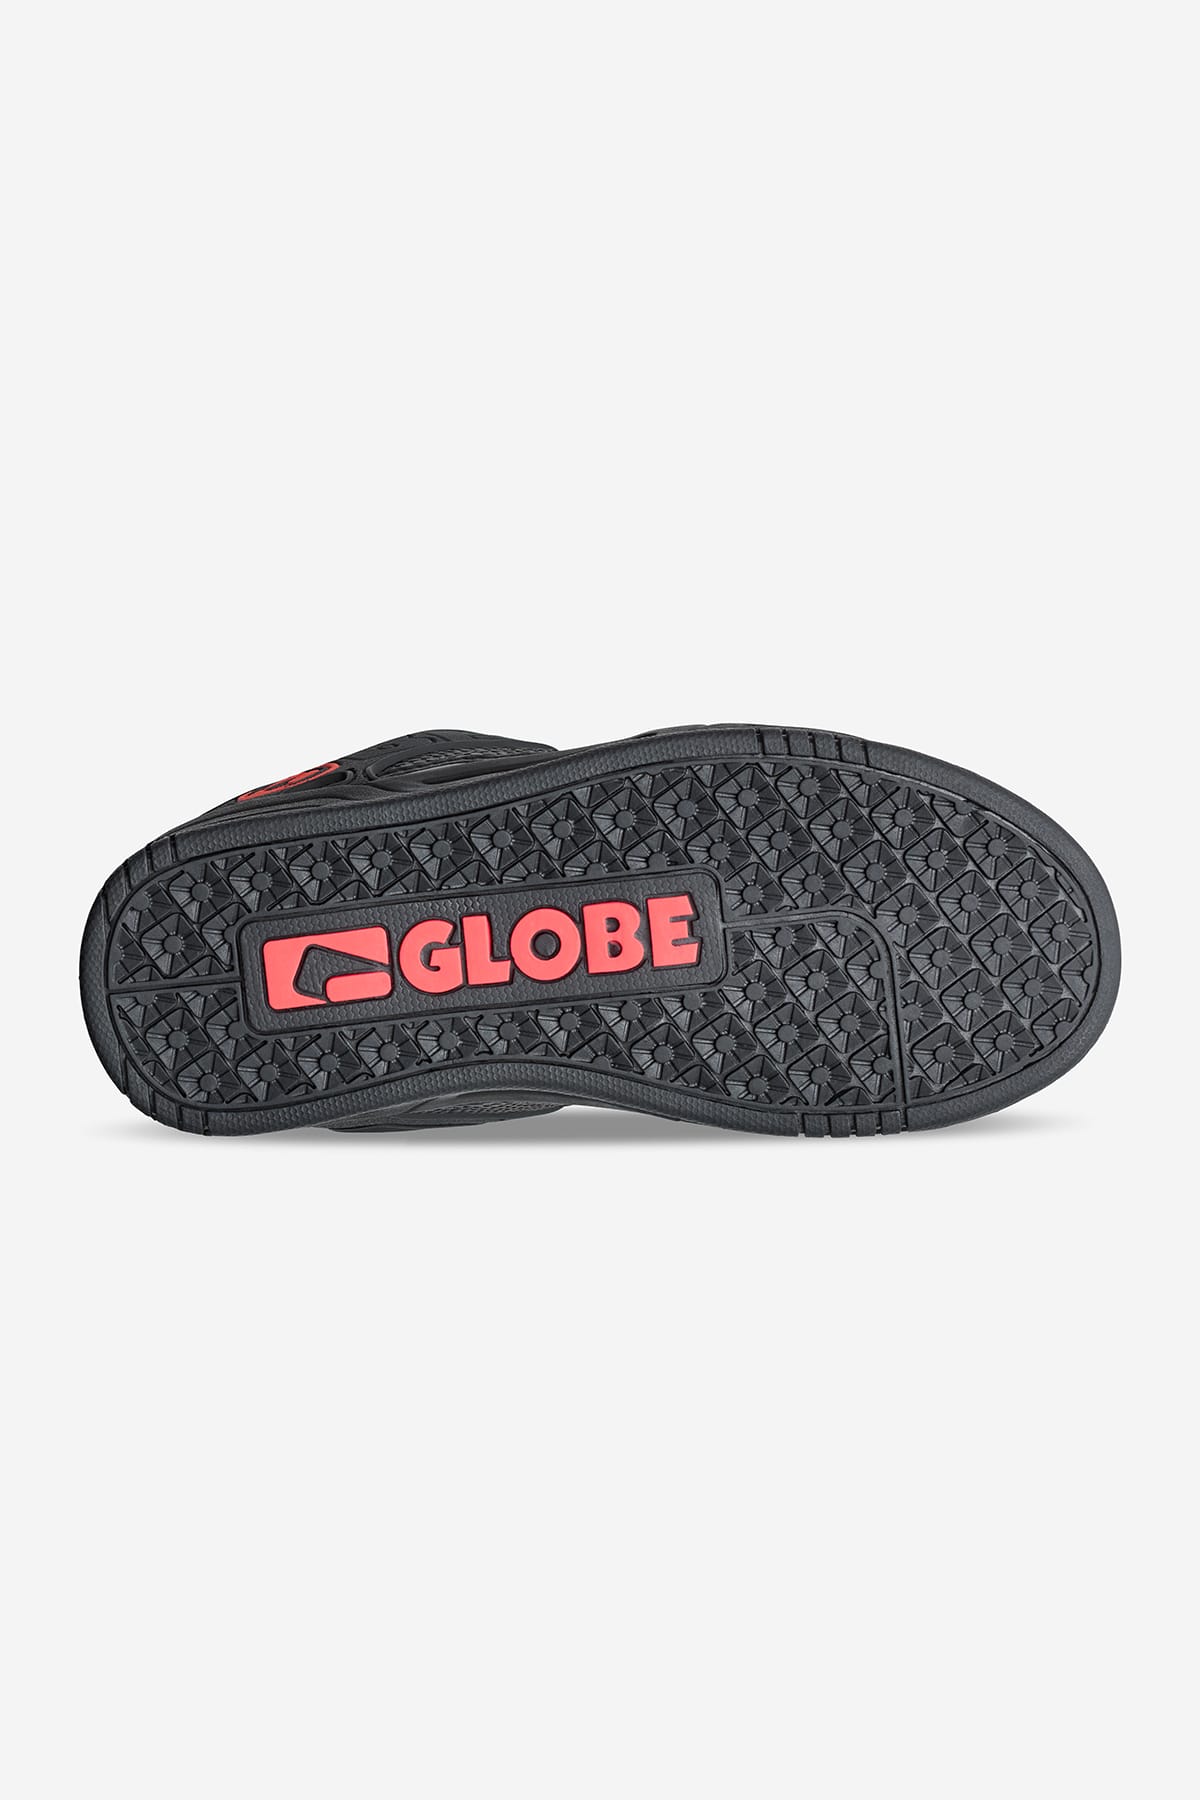 Globe - Tilt Kids - Black/Snake - Skate Shoes